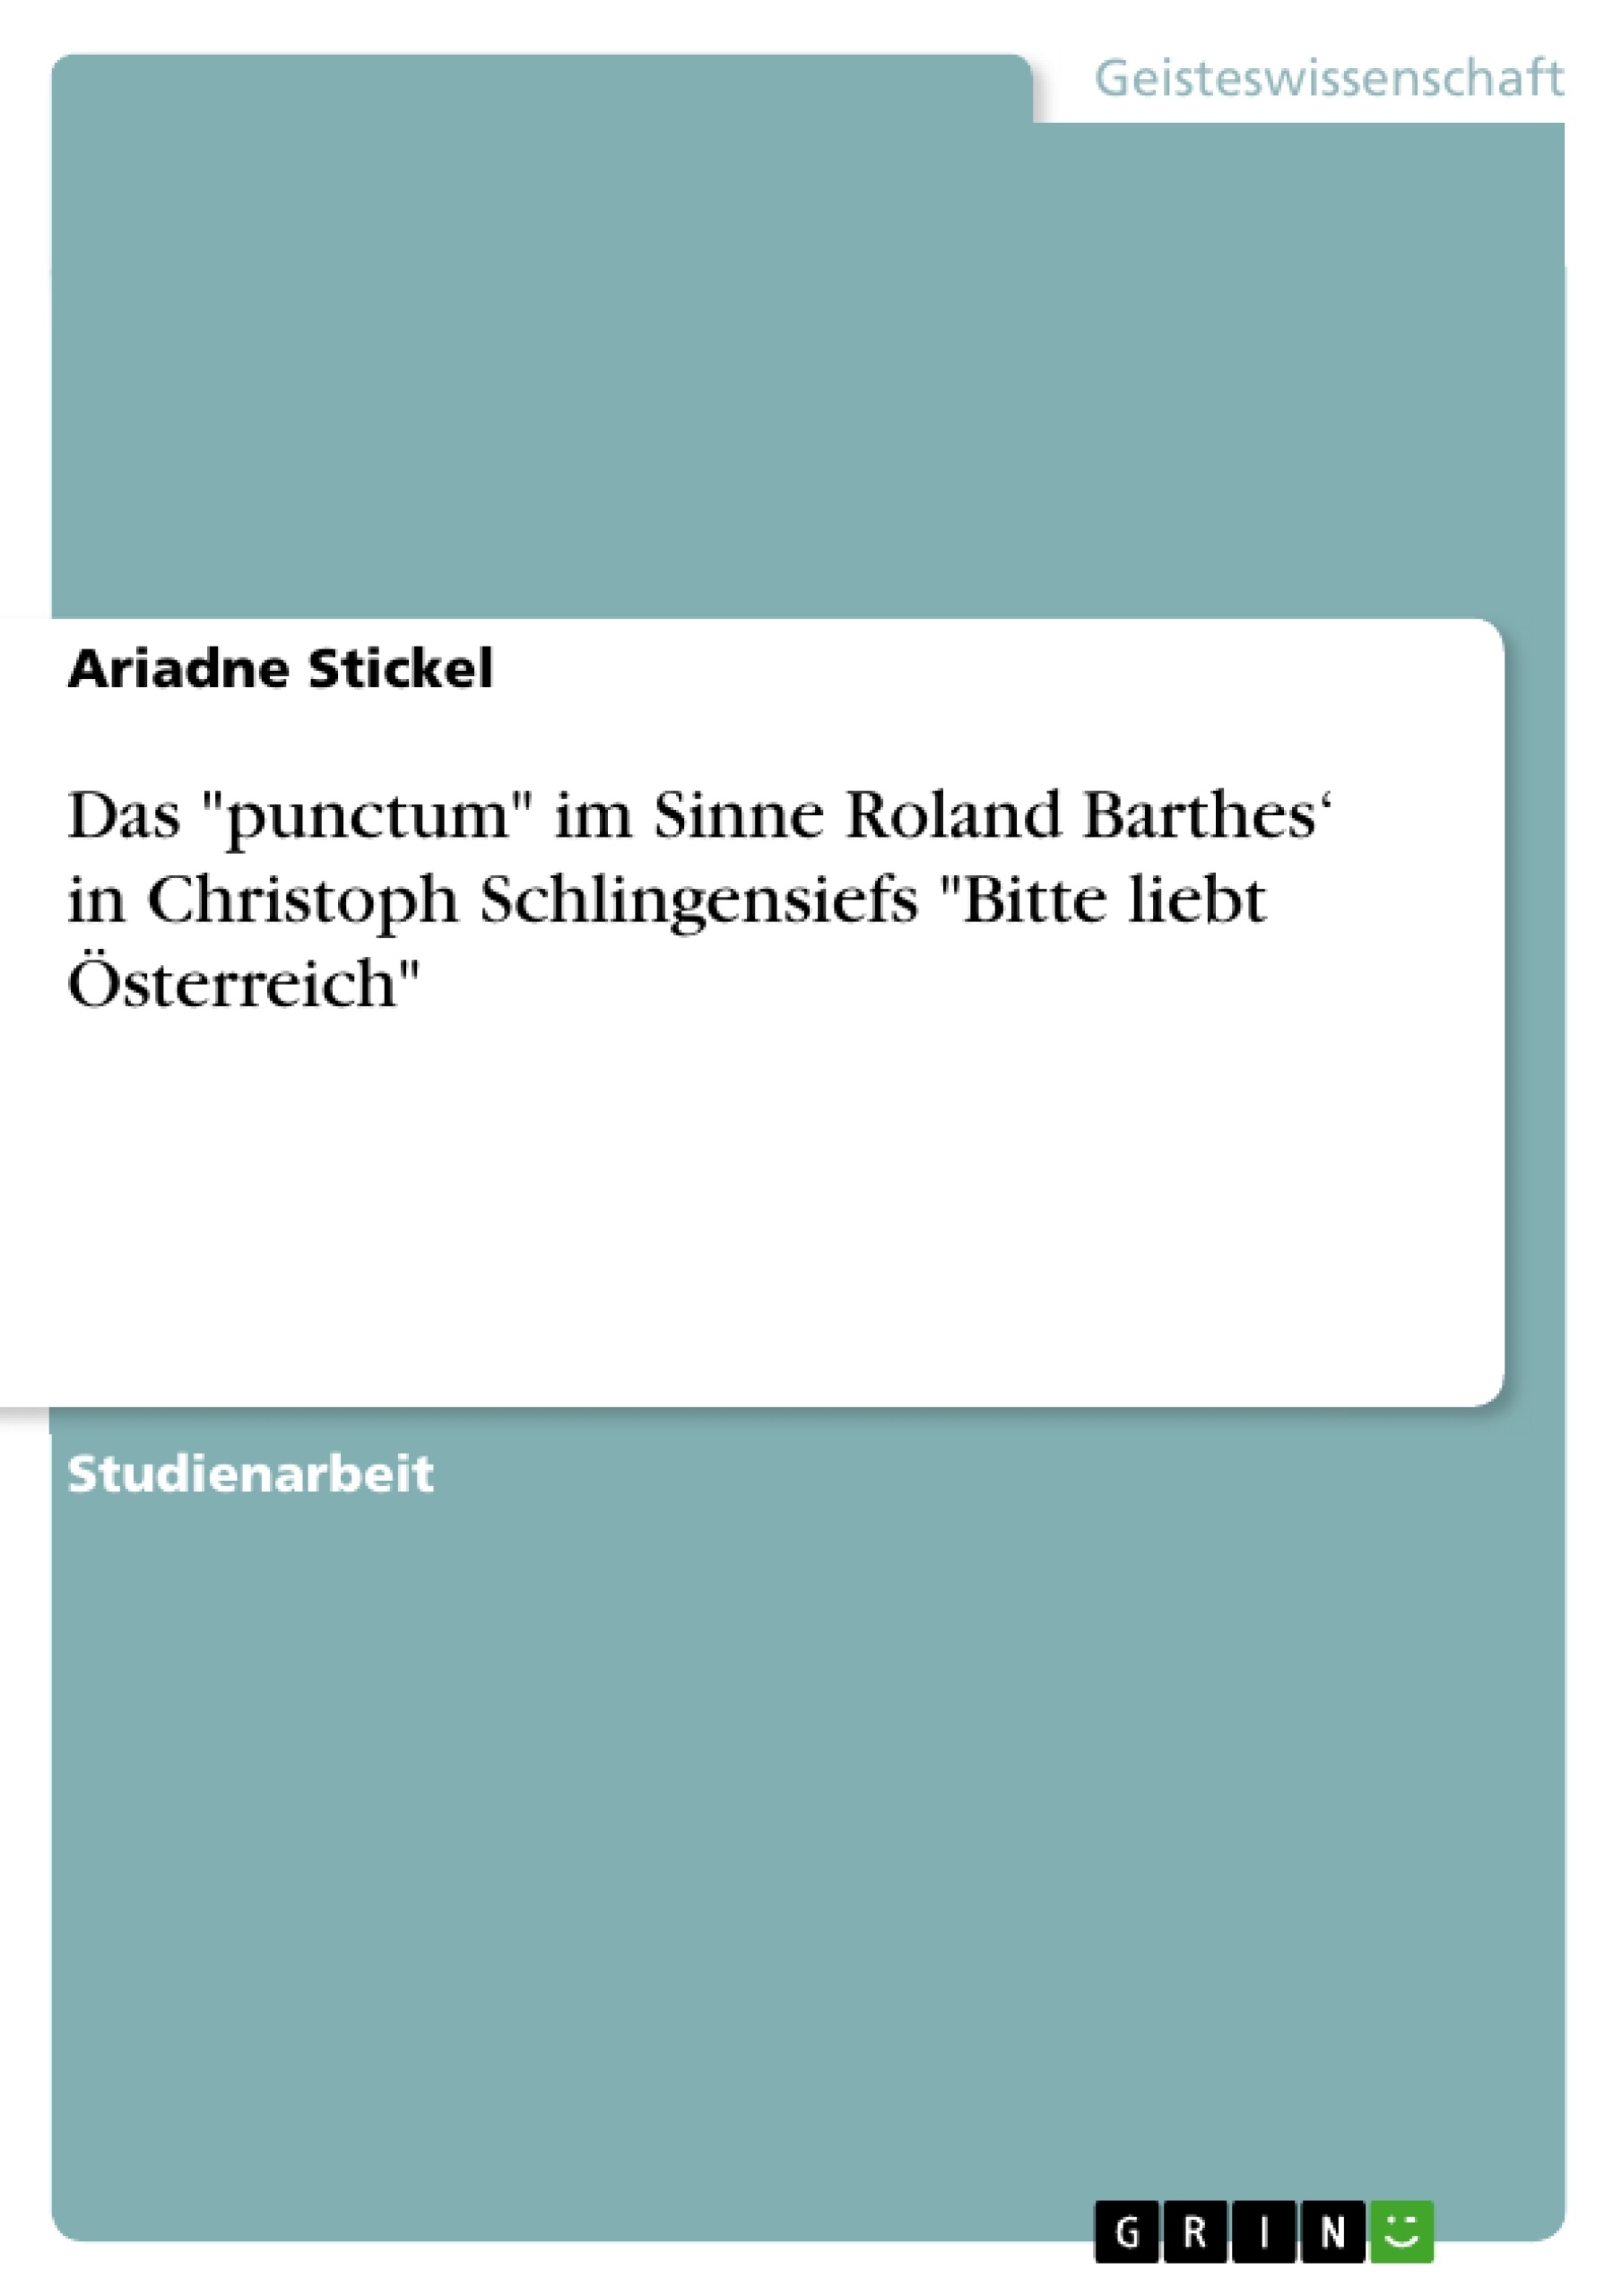 Title: Das "punctum" im Sinne Roland Barthes‘ in Christoph Schlingensiefs "Bitte liebt Österreich"